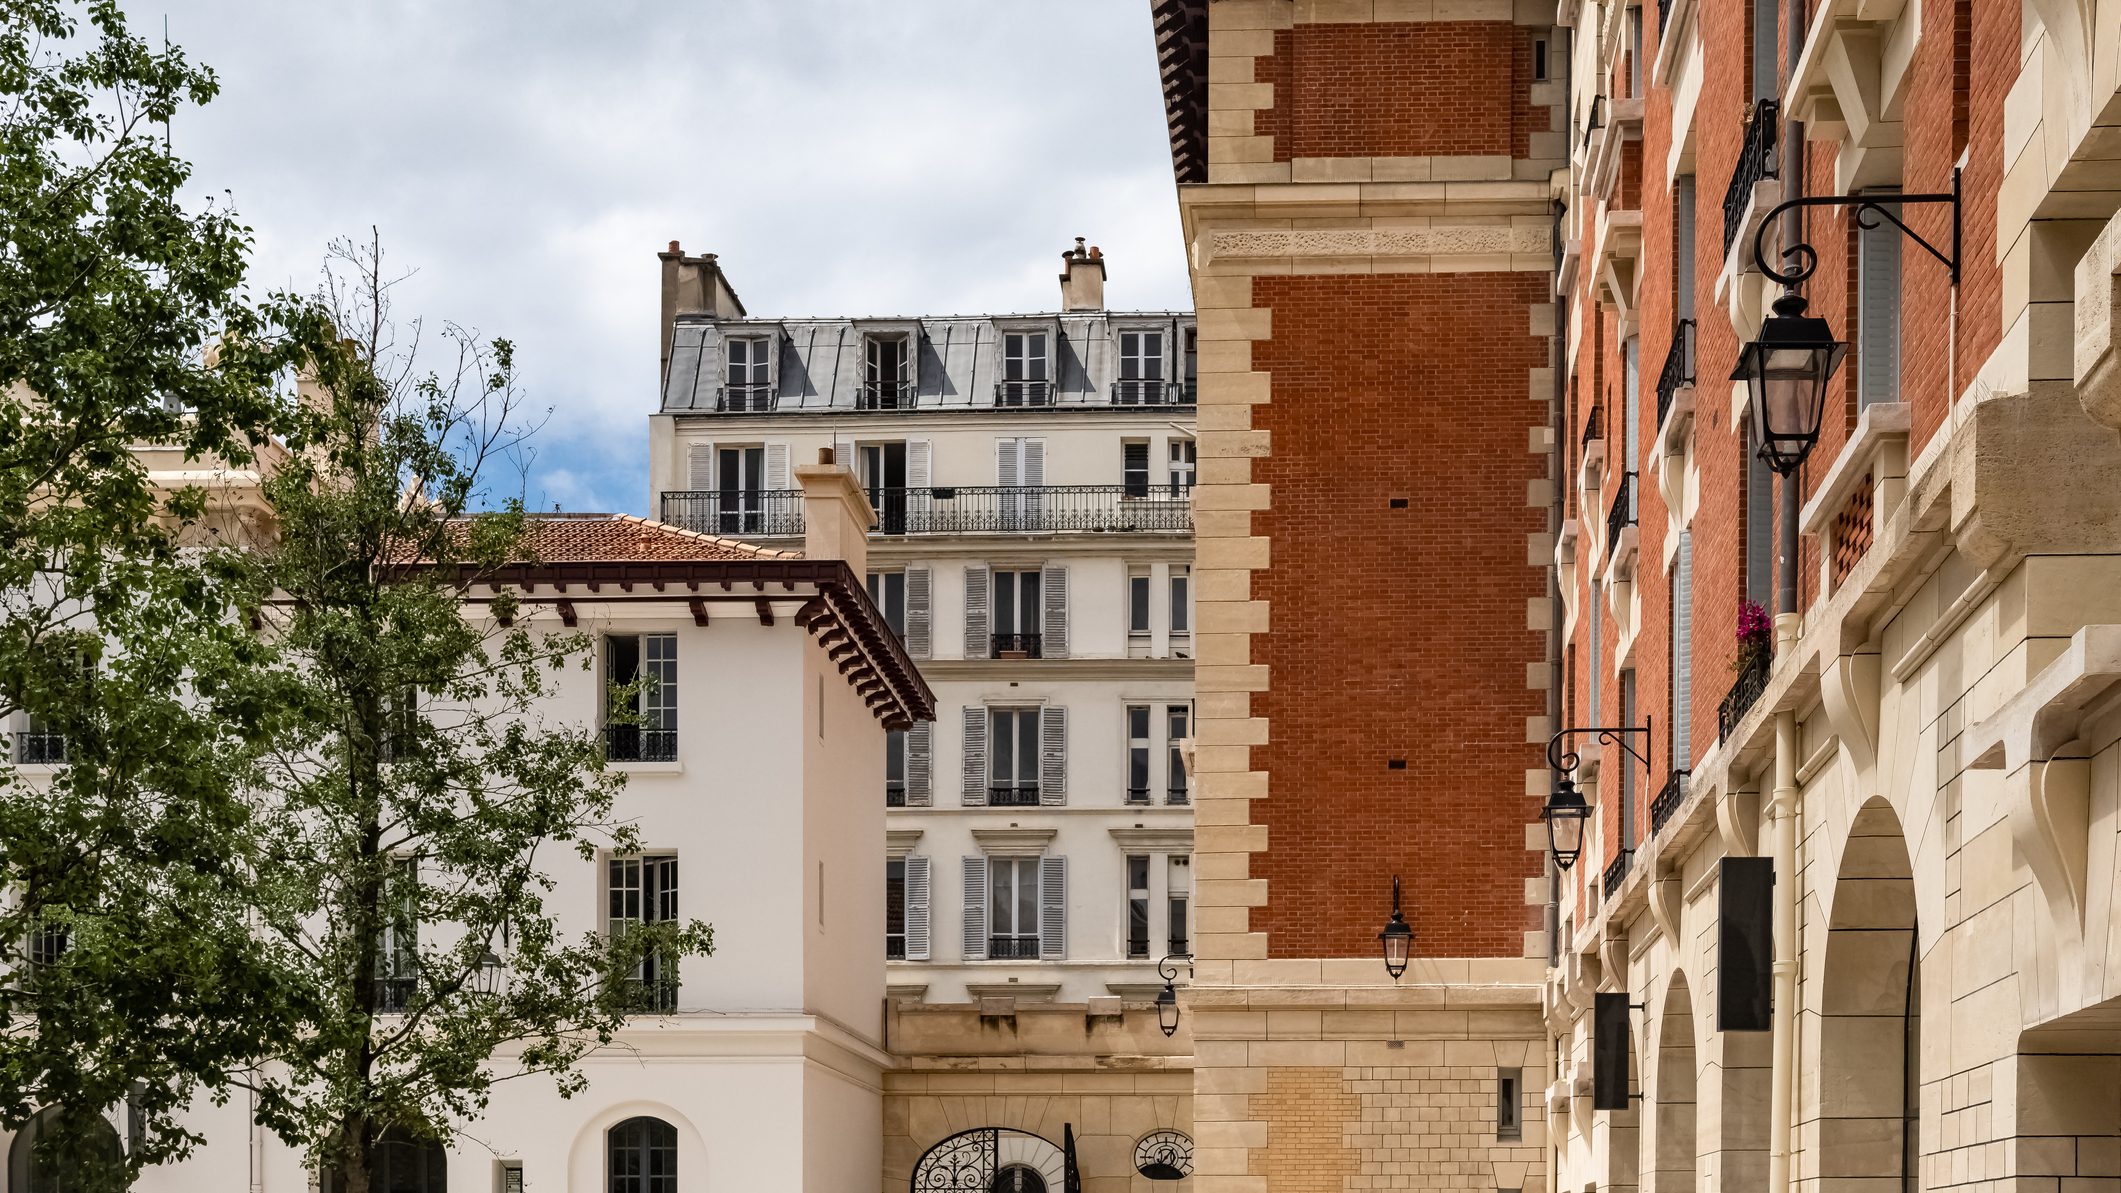 4,7 négyzetméteres lakást bérelt egy pincér havi 550 euróért Párizsban